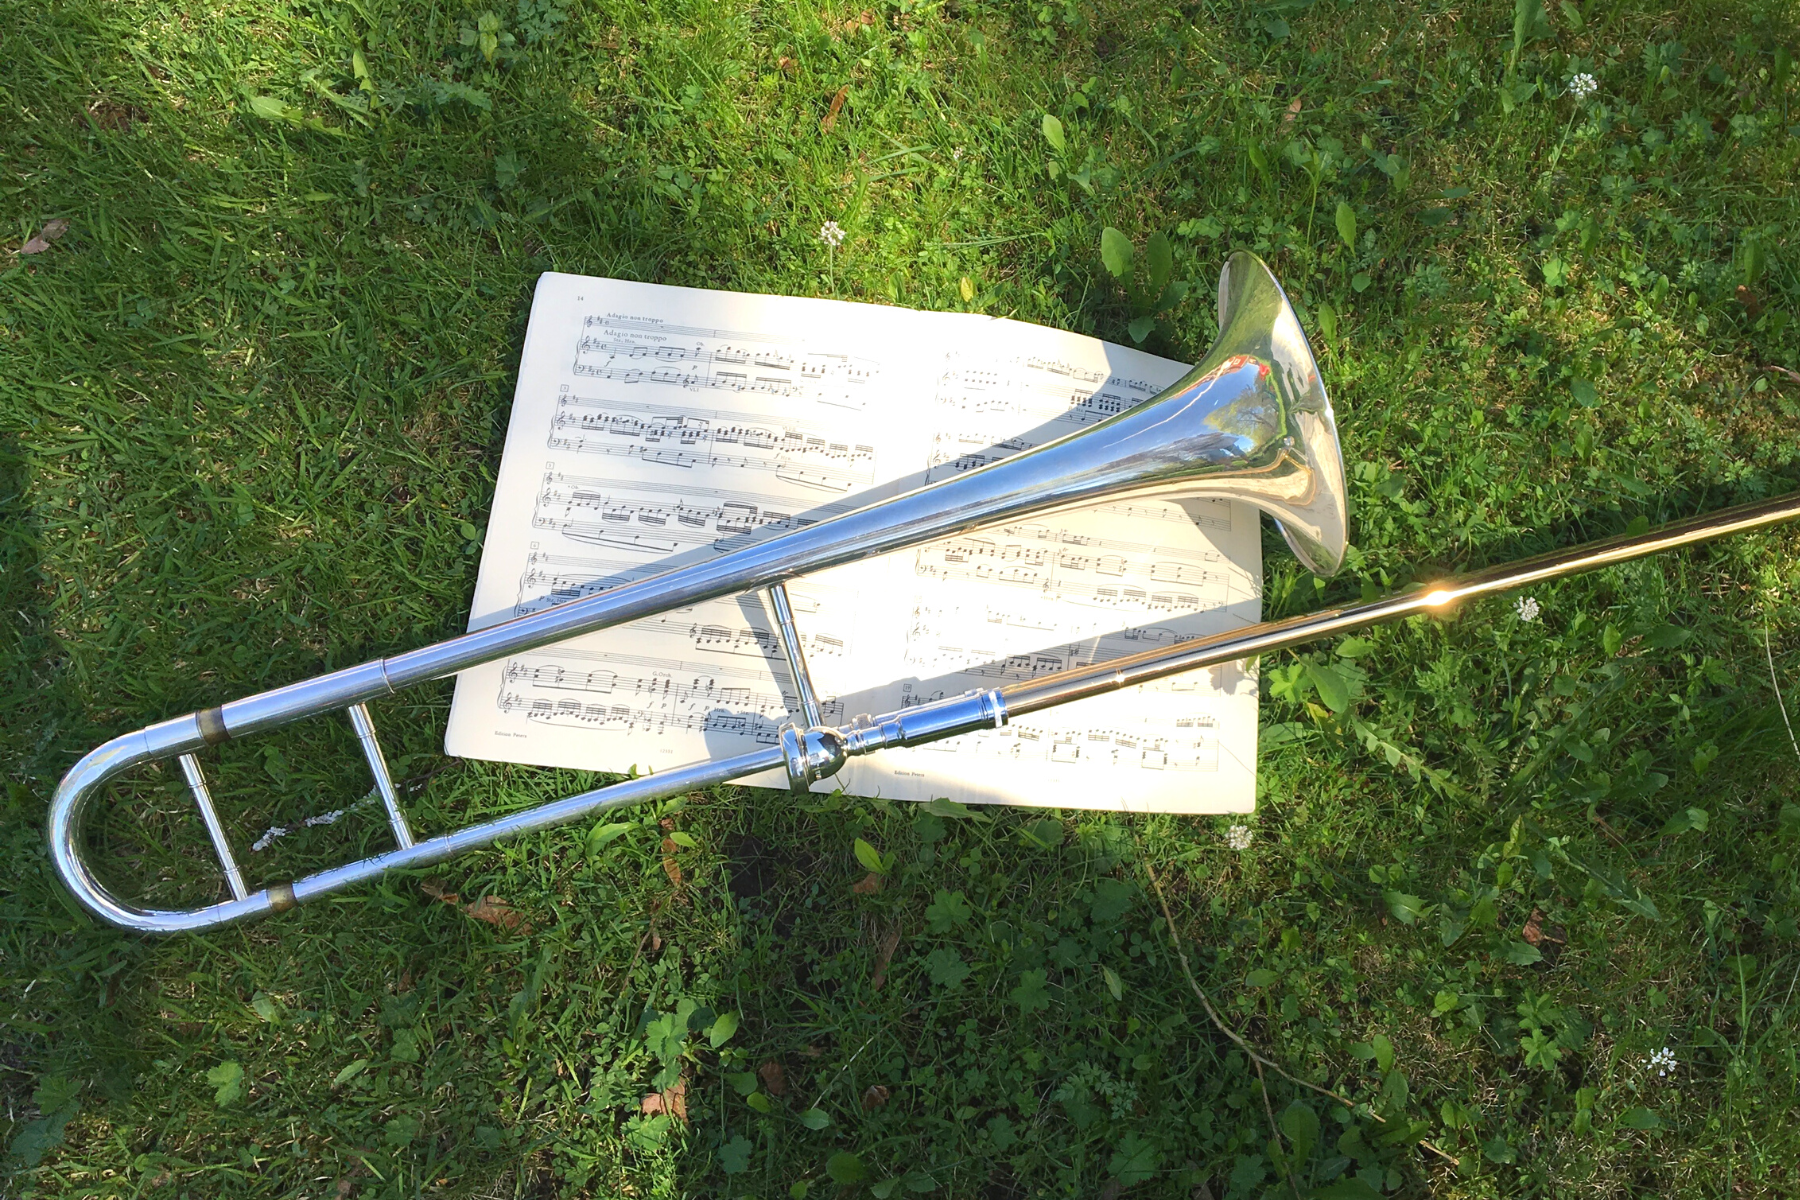 A trombone in the grass